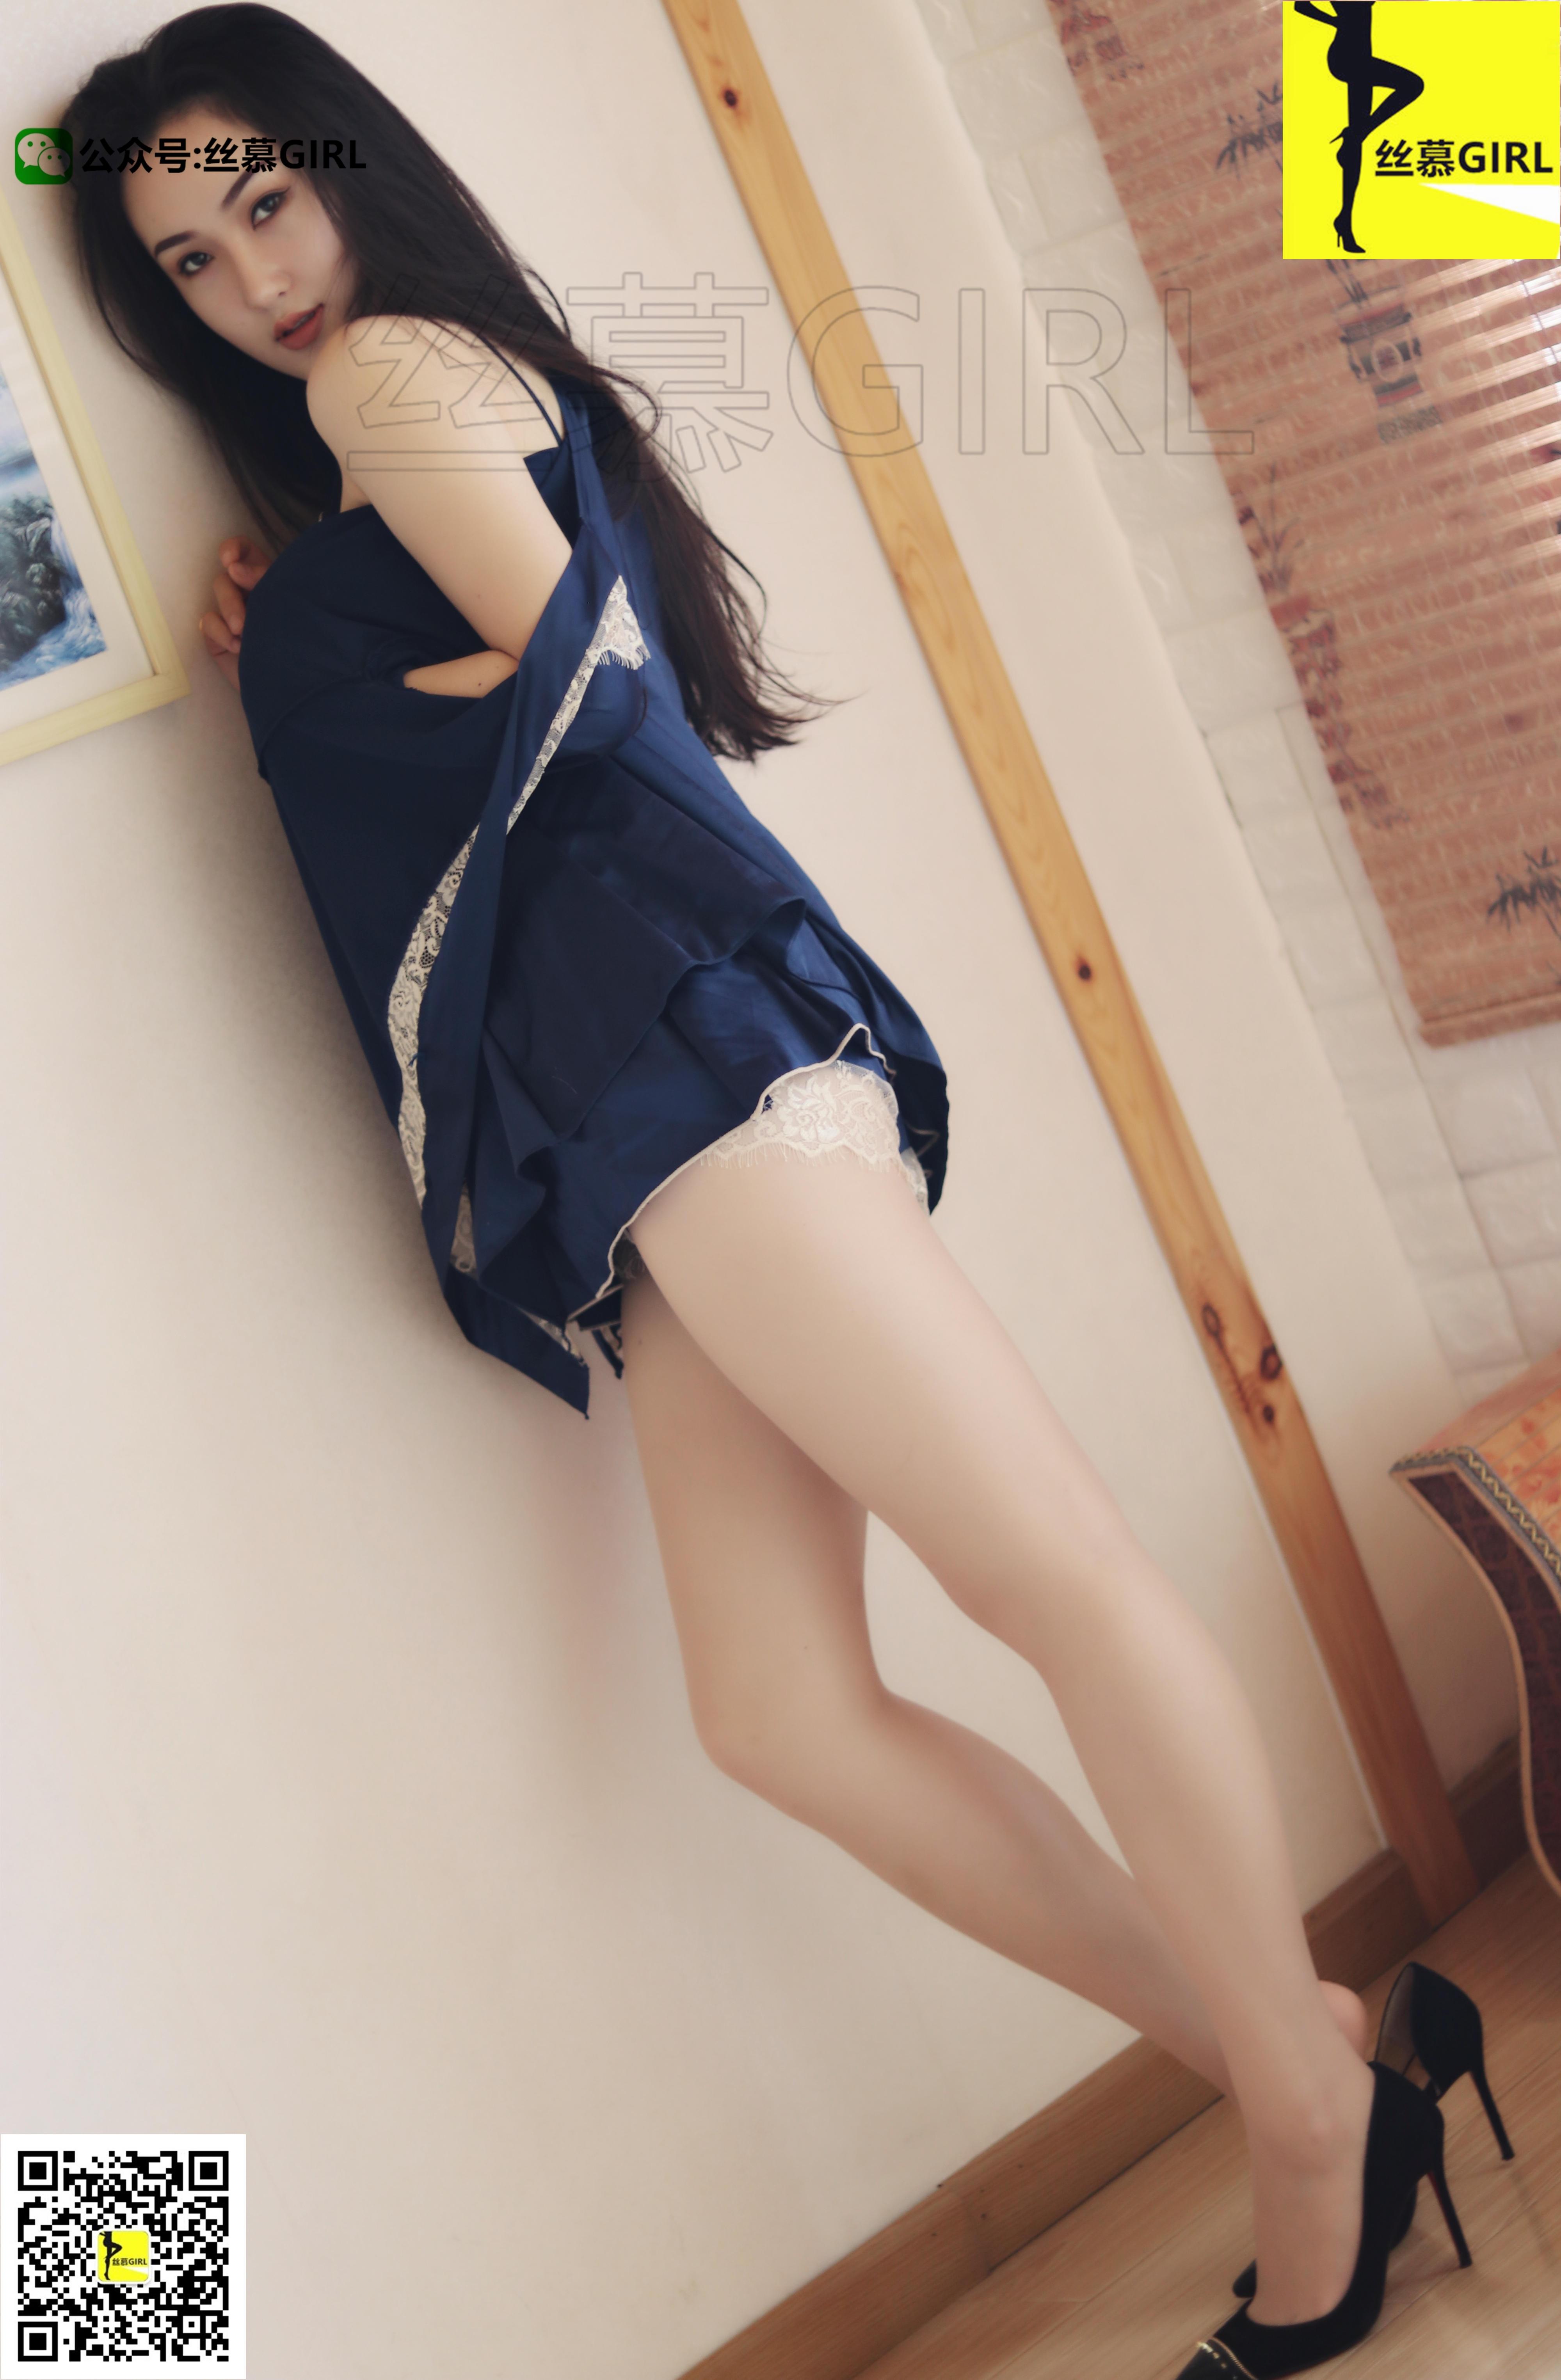 [丝慕GIRL]NO.012 丝密系列 《女老大》 尹主管 蓝色睡衣与蕾丝内衣加黑丝美腿性感写真集,19